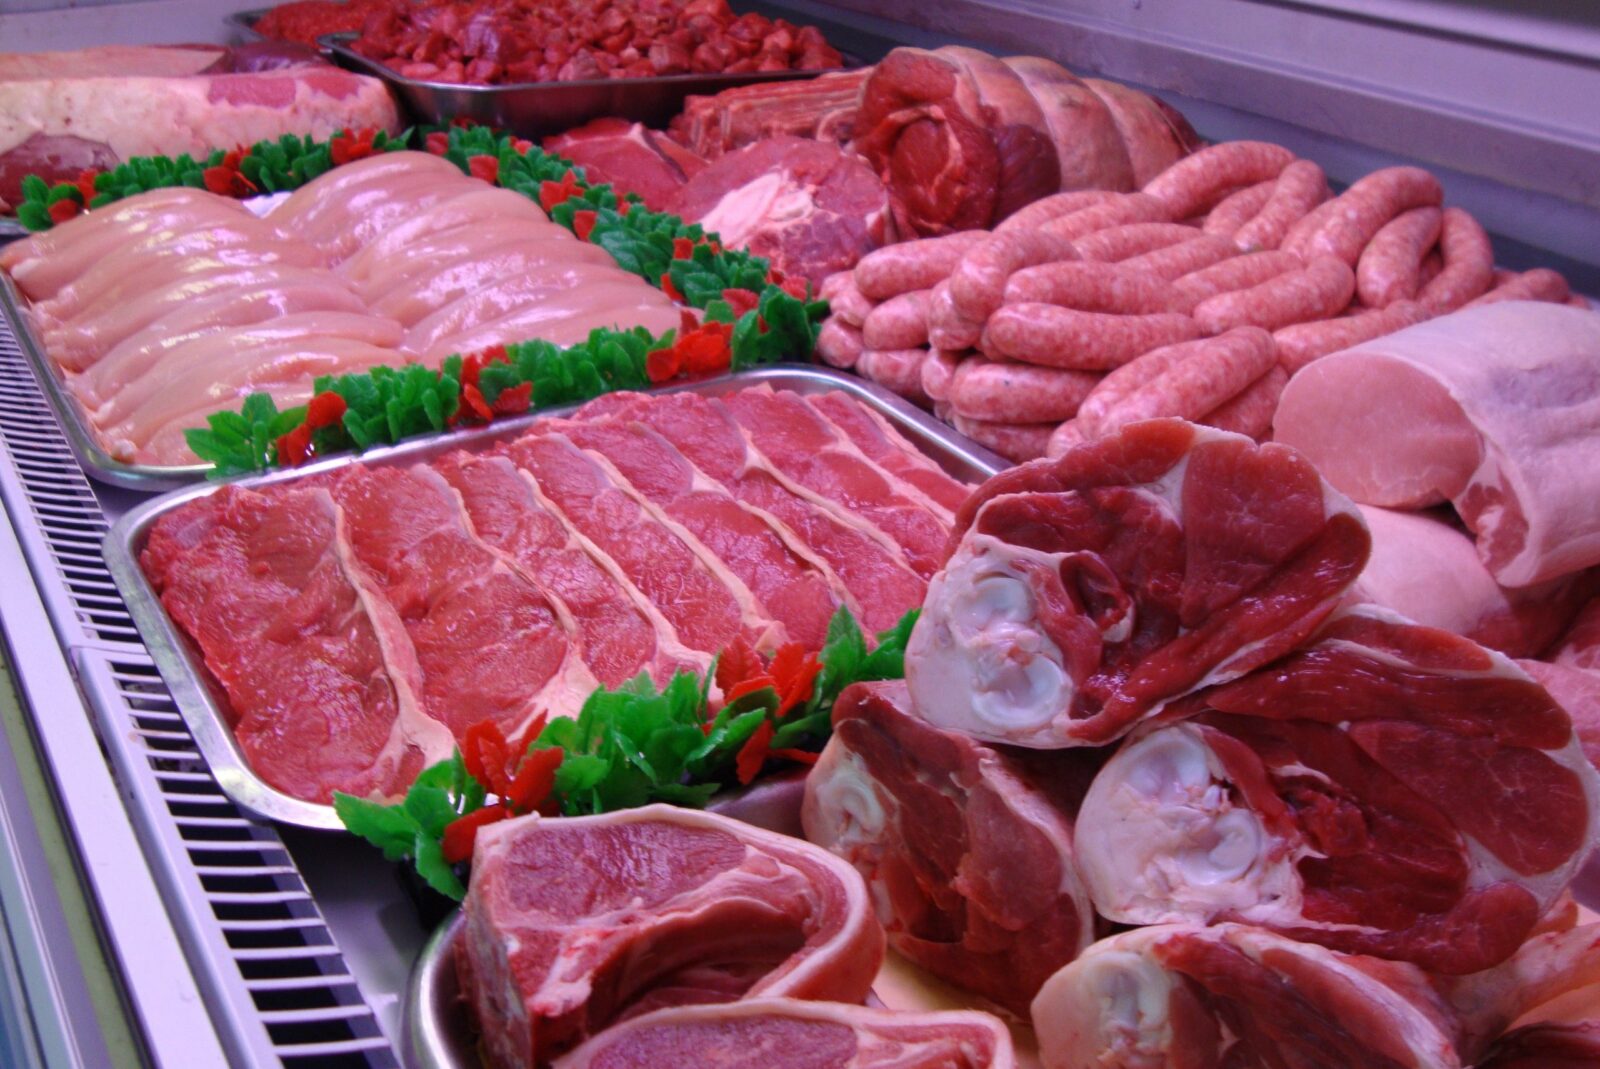 مبادرة تخفيض أسعار اللحوم تحقق تراجعاً ملحوظاً في الأسعار بالأسواق المصرية